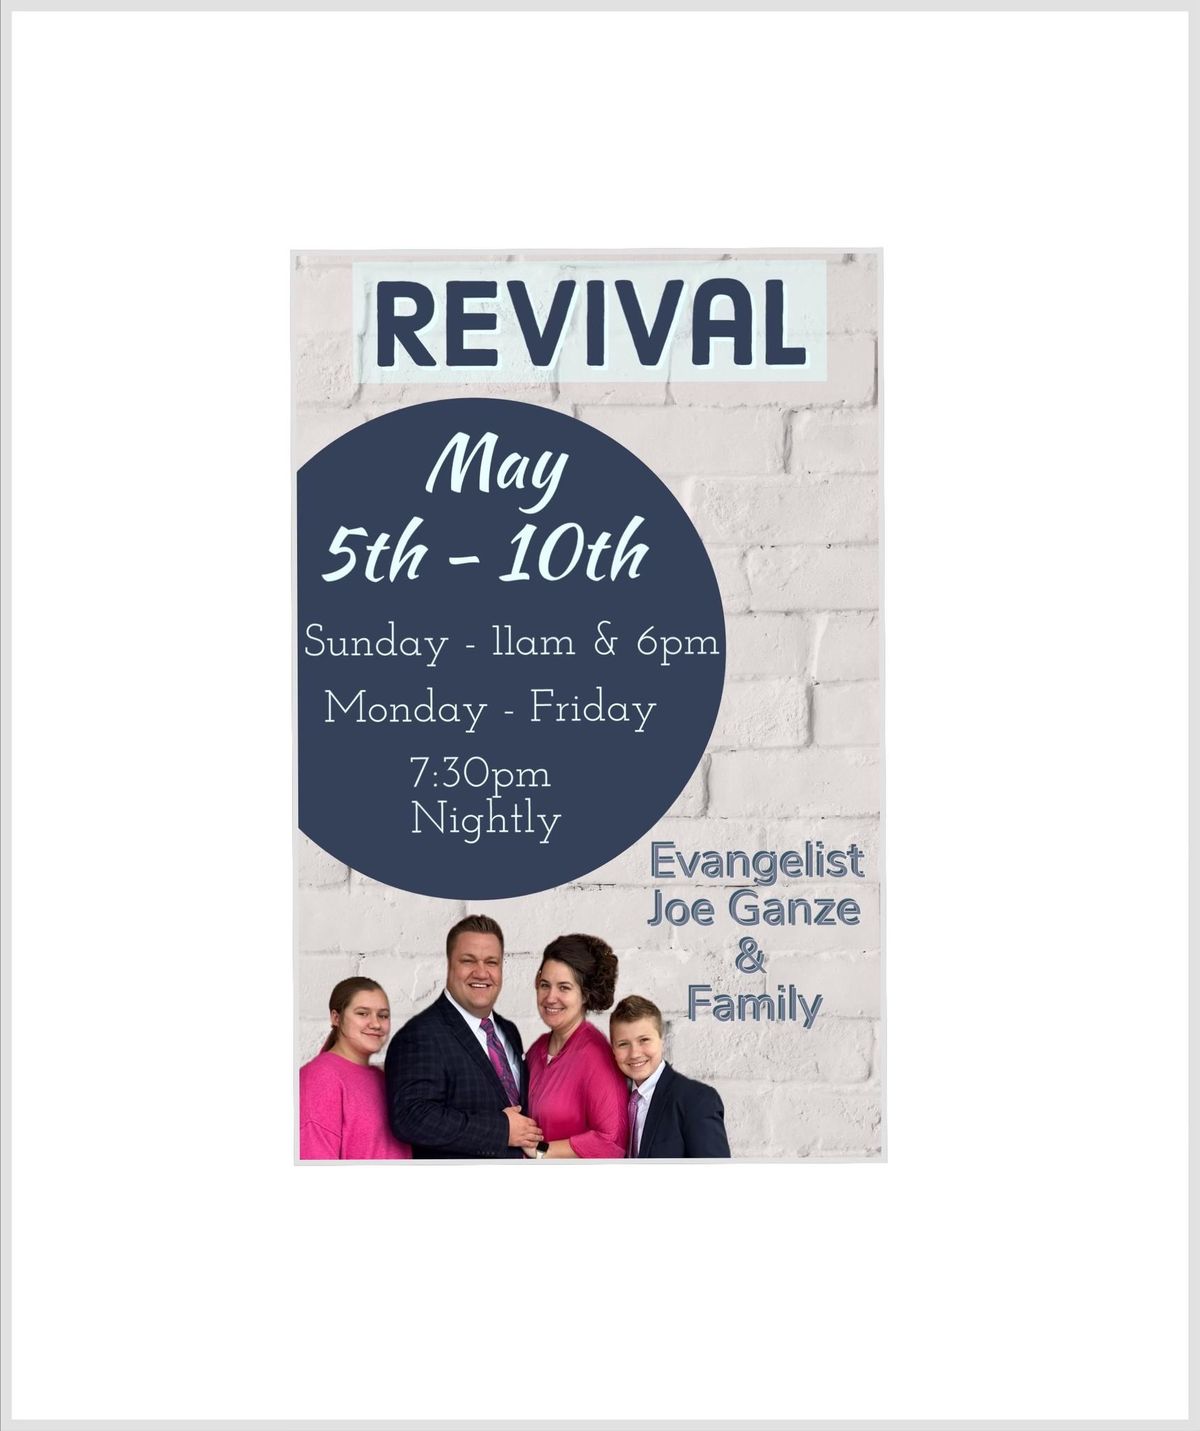 Revival with Evangelist Joe Ganze